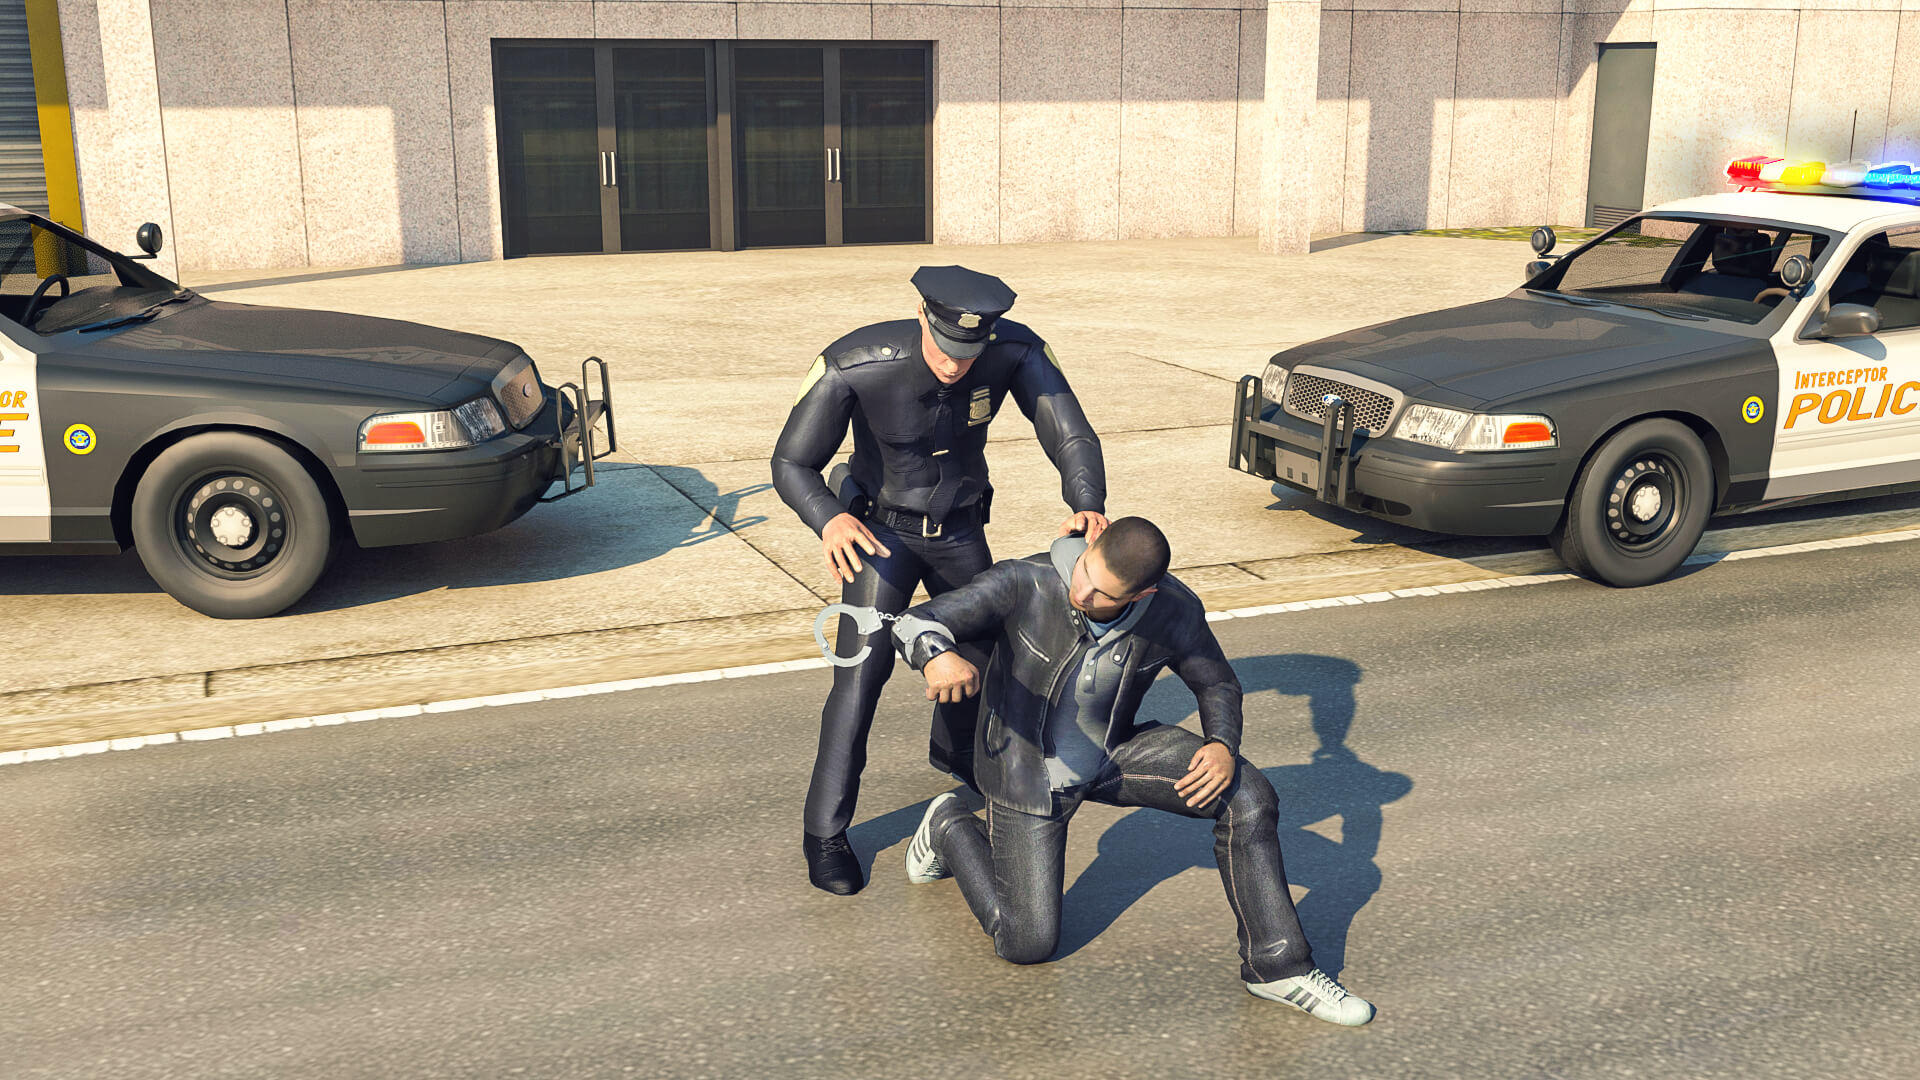 Screenshot 1 of หน้าที่ของตำรวจ: นักสู้อาชญากรรม 1.69